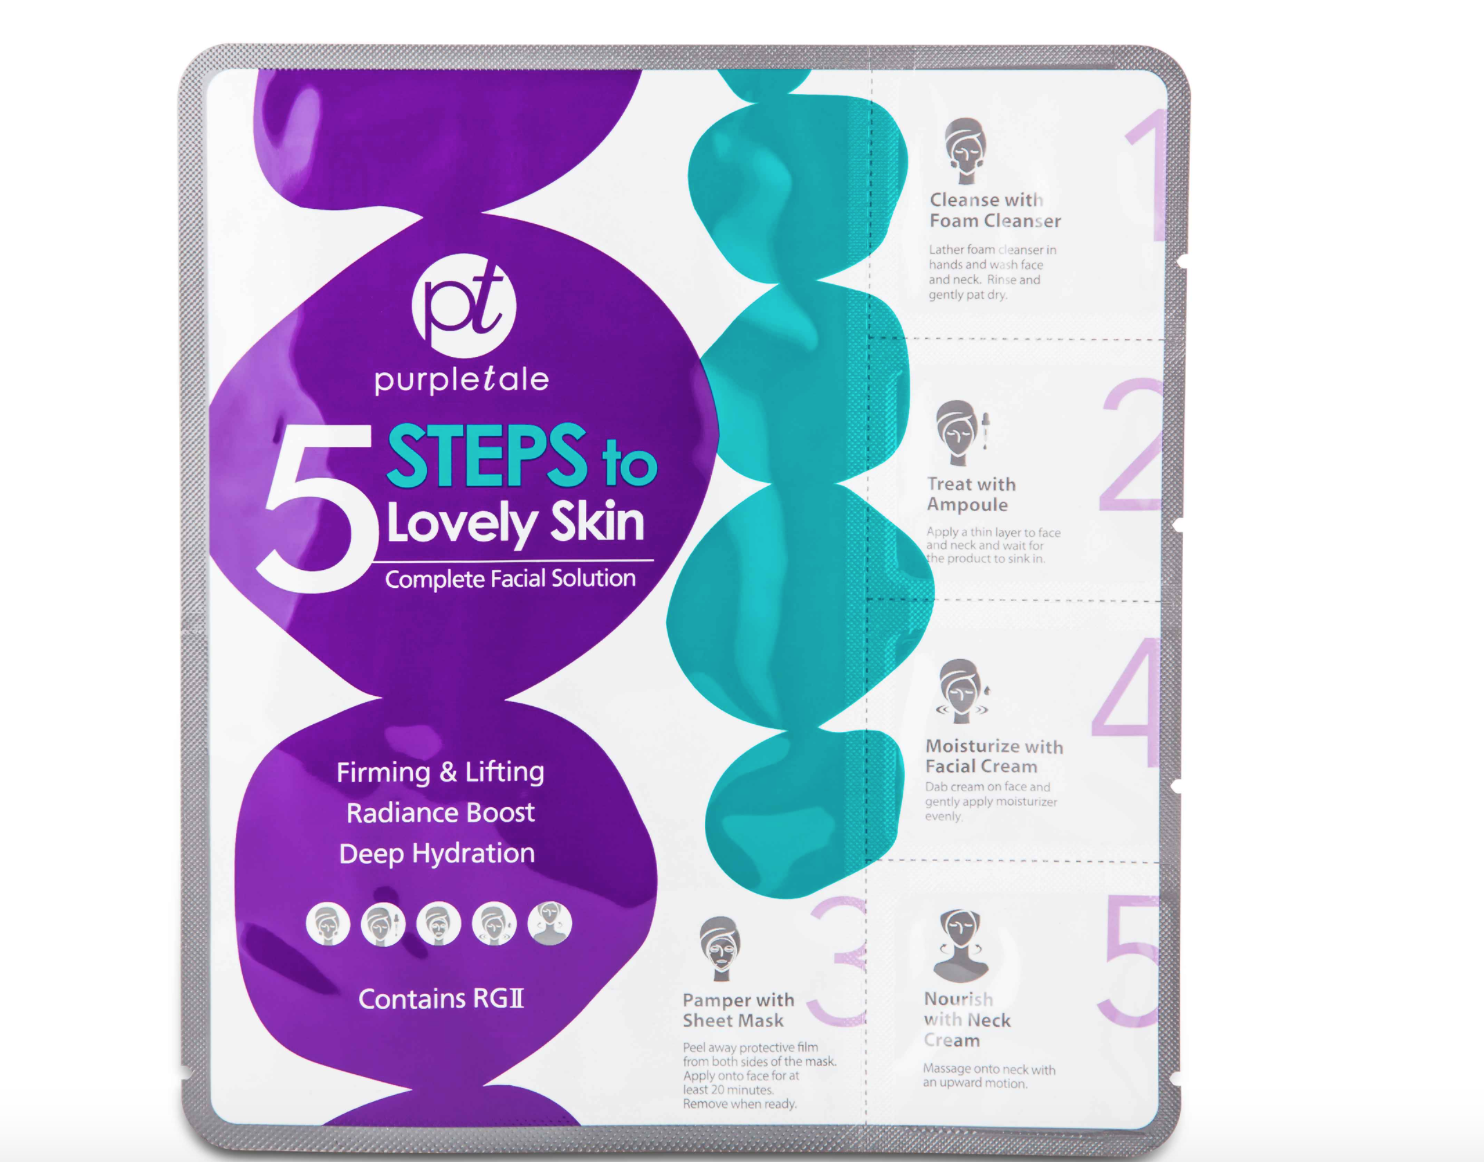 Purpletale 5 Steps to Lovely Skin